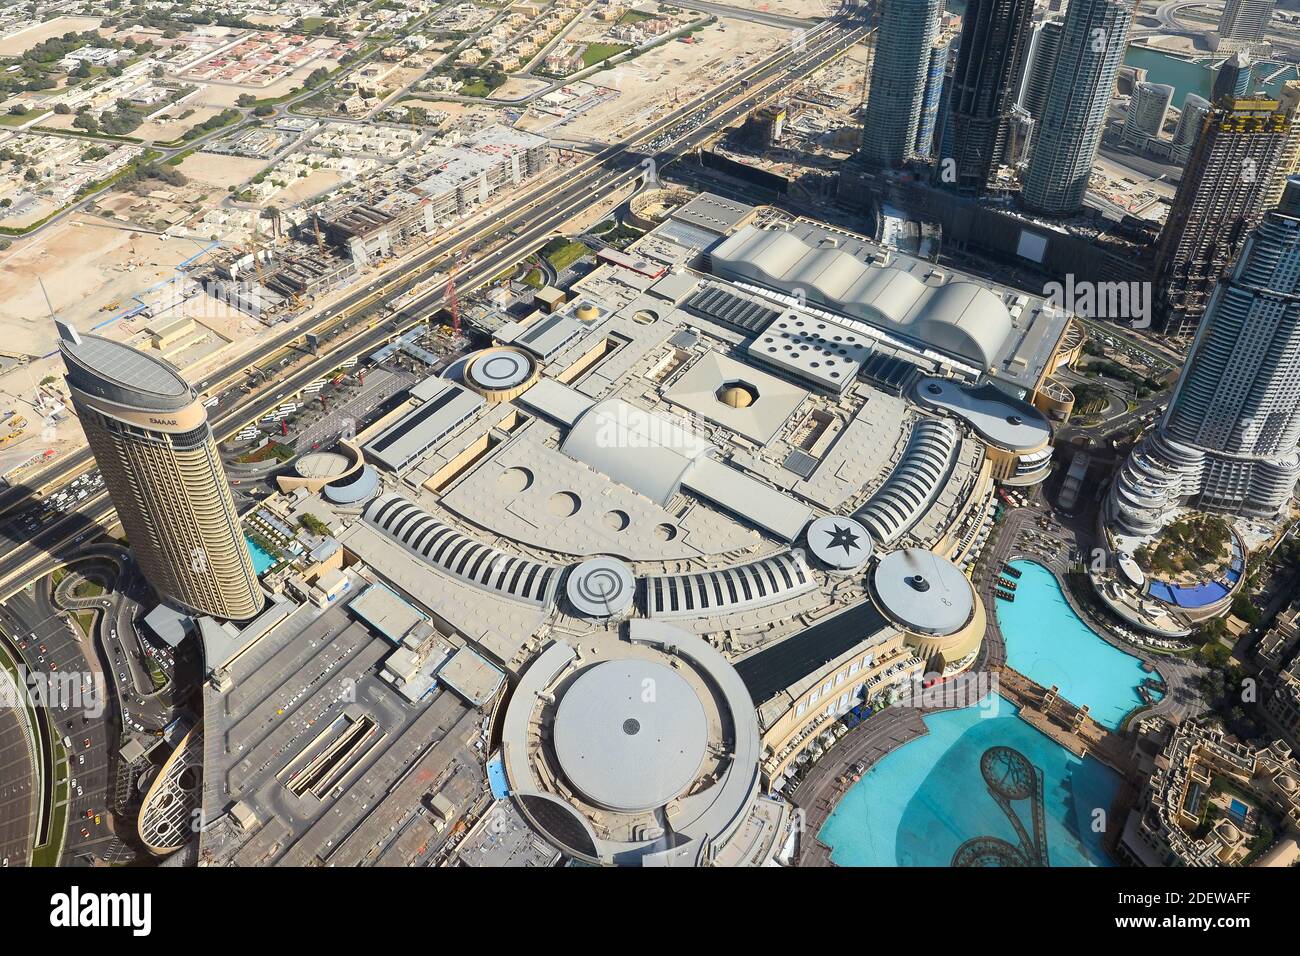 Die Dubai Mall, das größte Einkaufszentrum der Welt, befindet sich in Dubai, Vereinigte Arabische Emirate. Luftaufnahme von der Außenansicht des Emaar-Grundstücks. Stockfoto